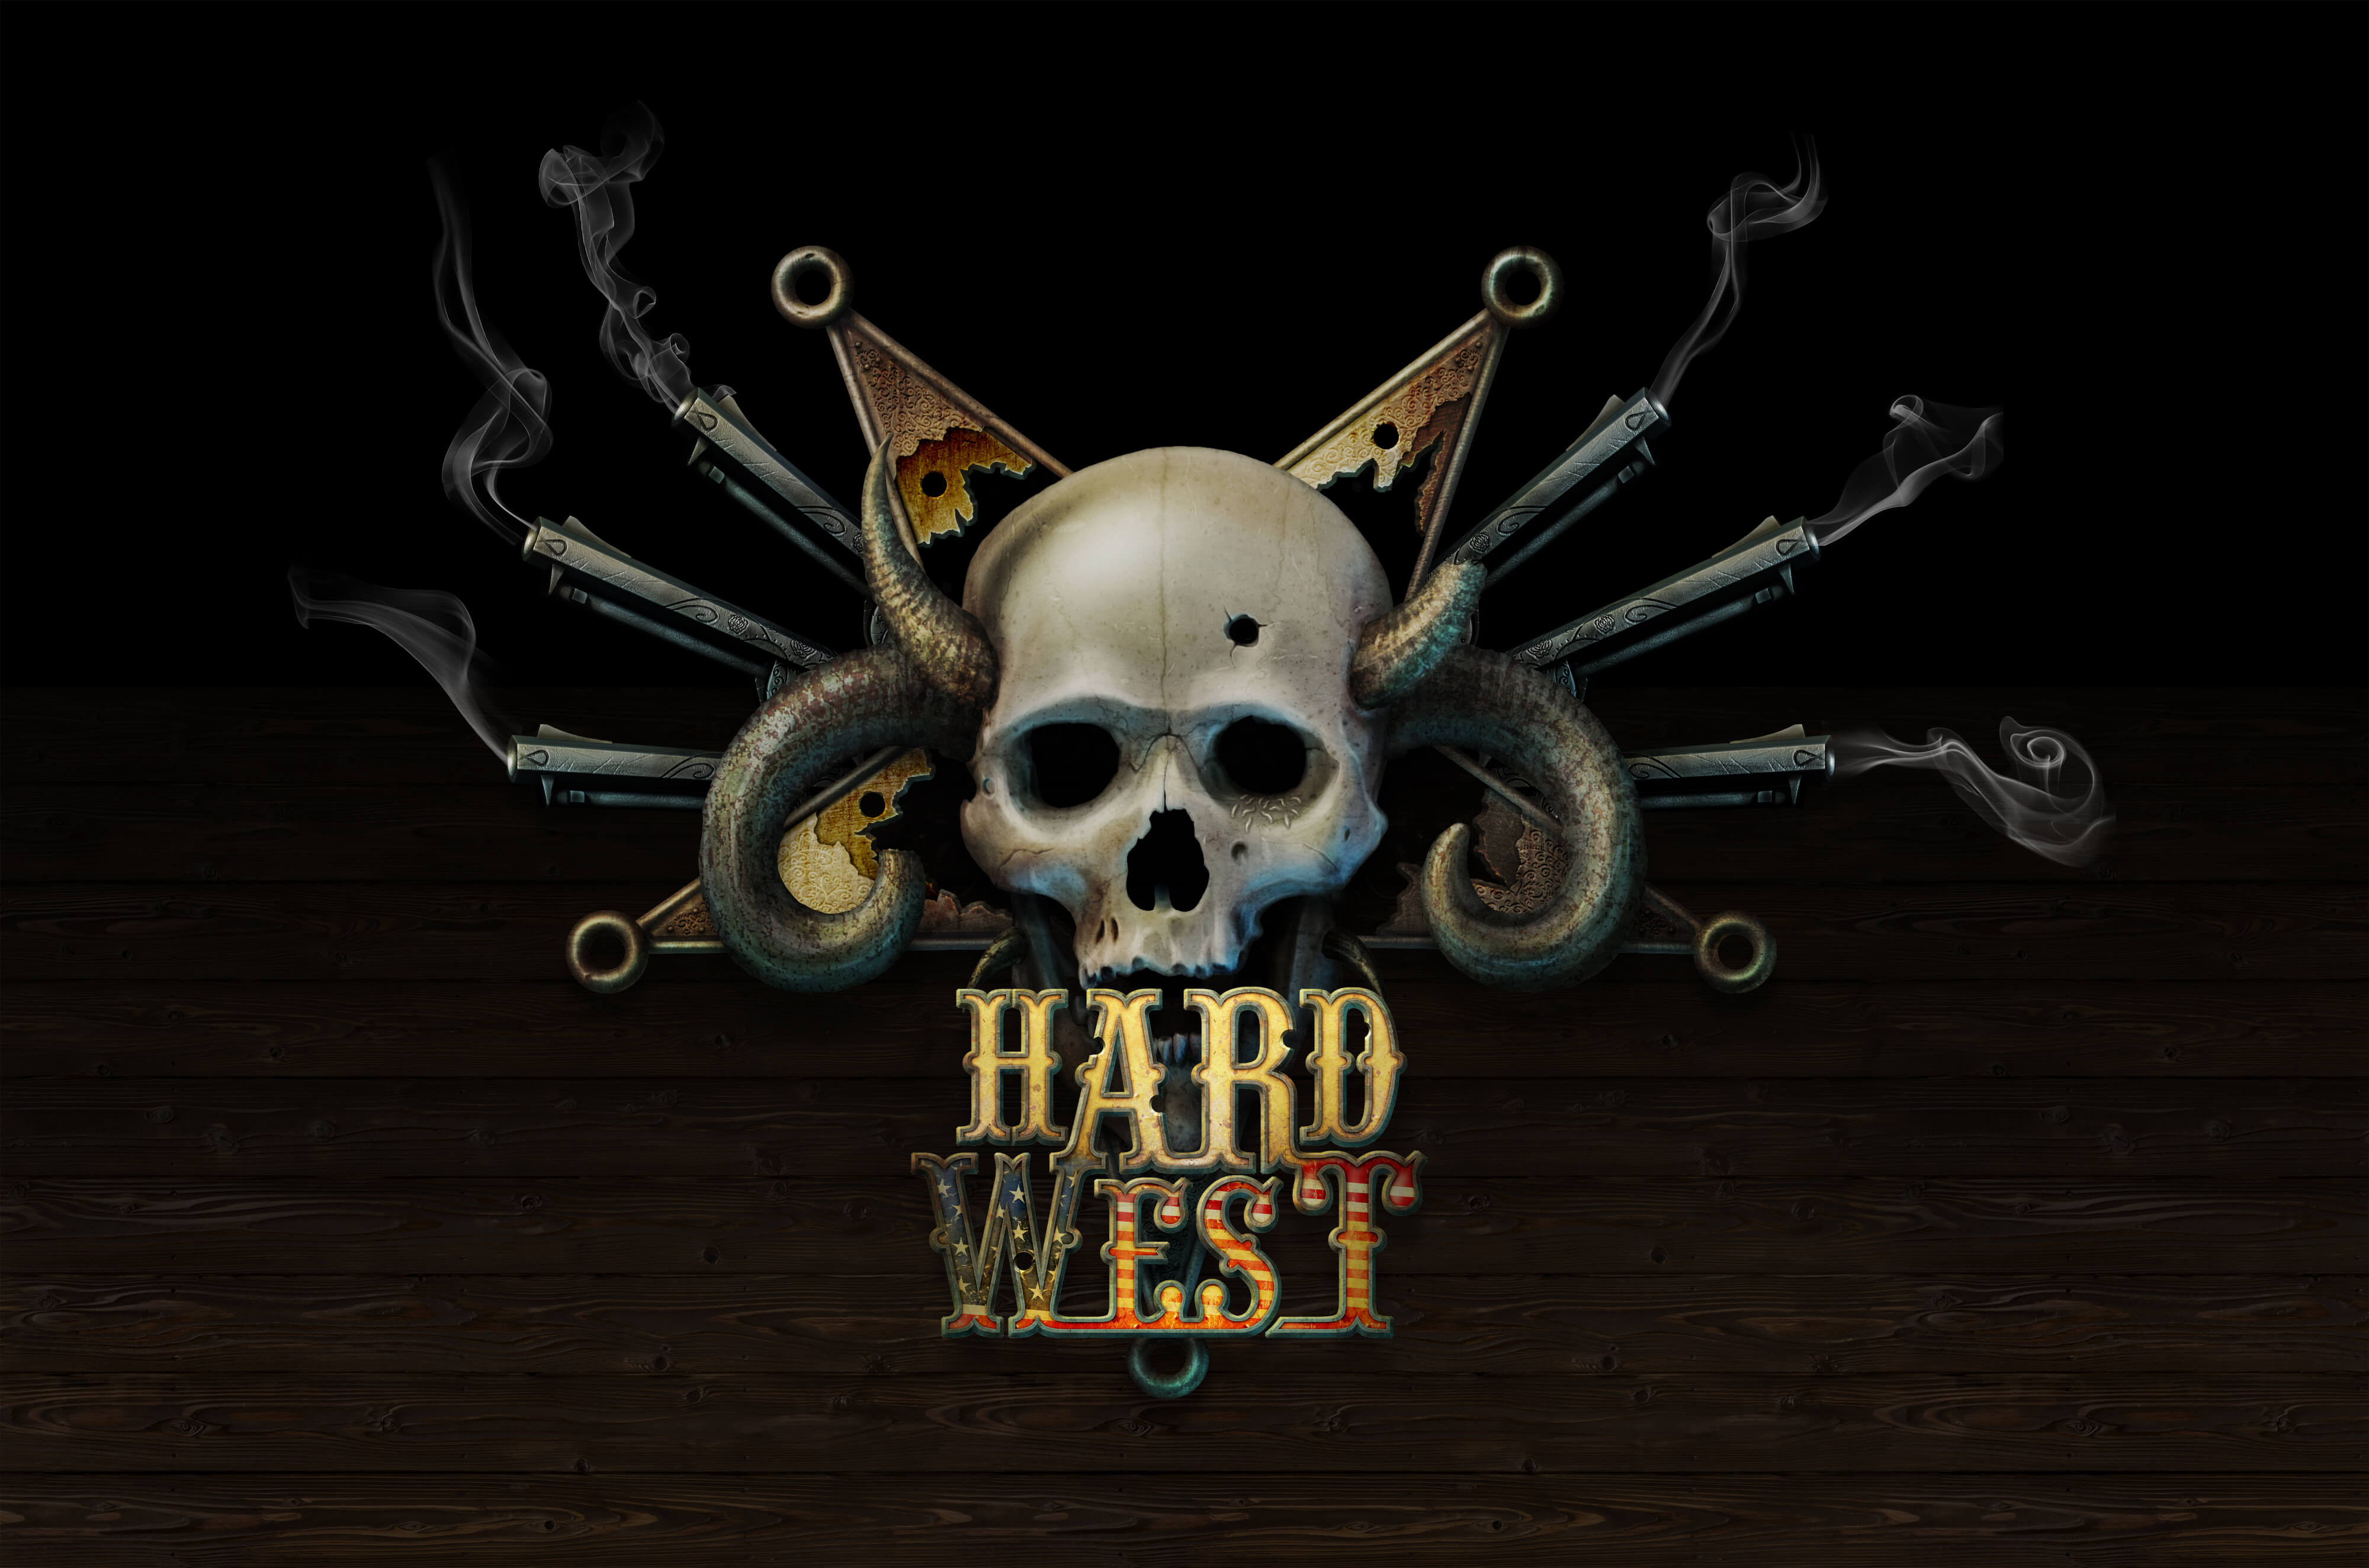 Hard обзоры. Hard West обложка. Hard West лого. Hard West 3. Hard West дьявол.